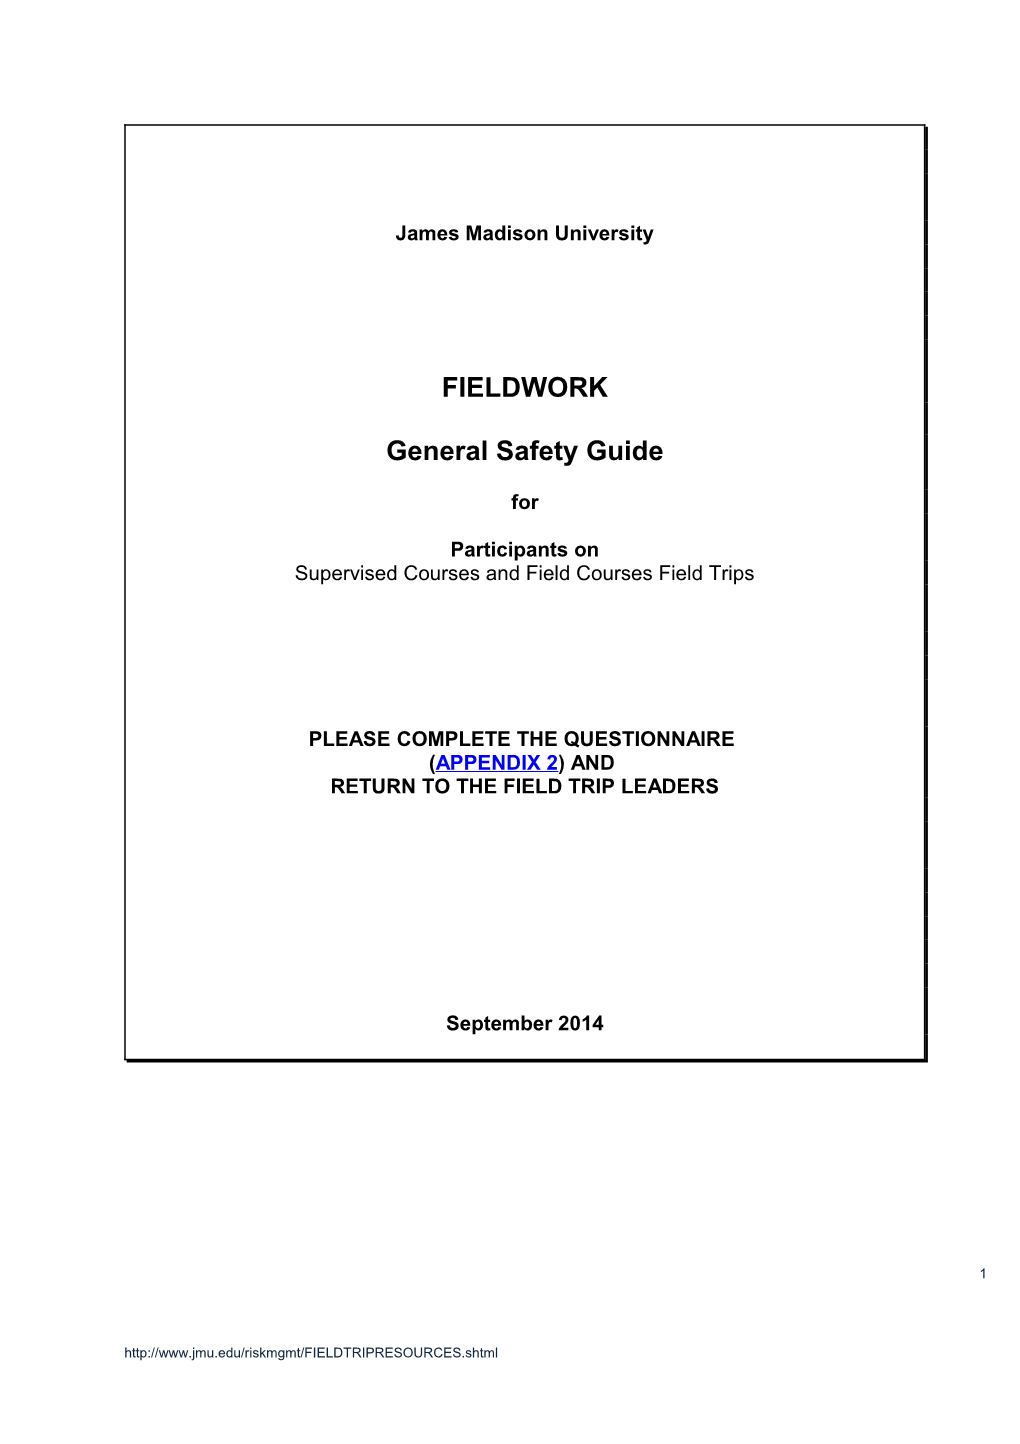 Fieldwork - General Safety Code